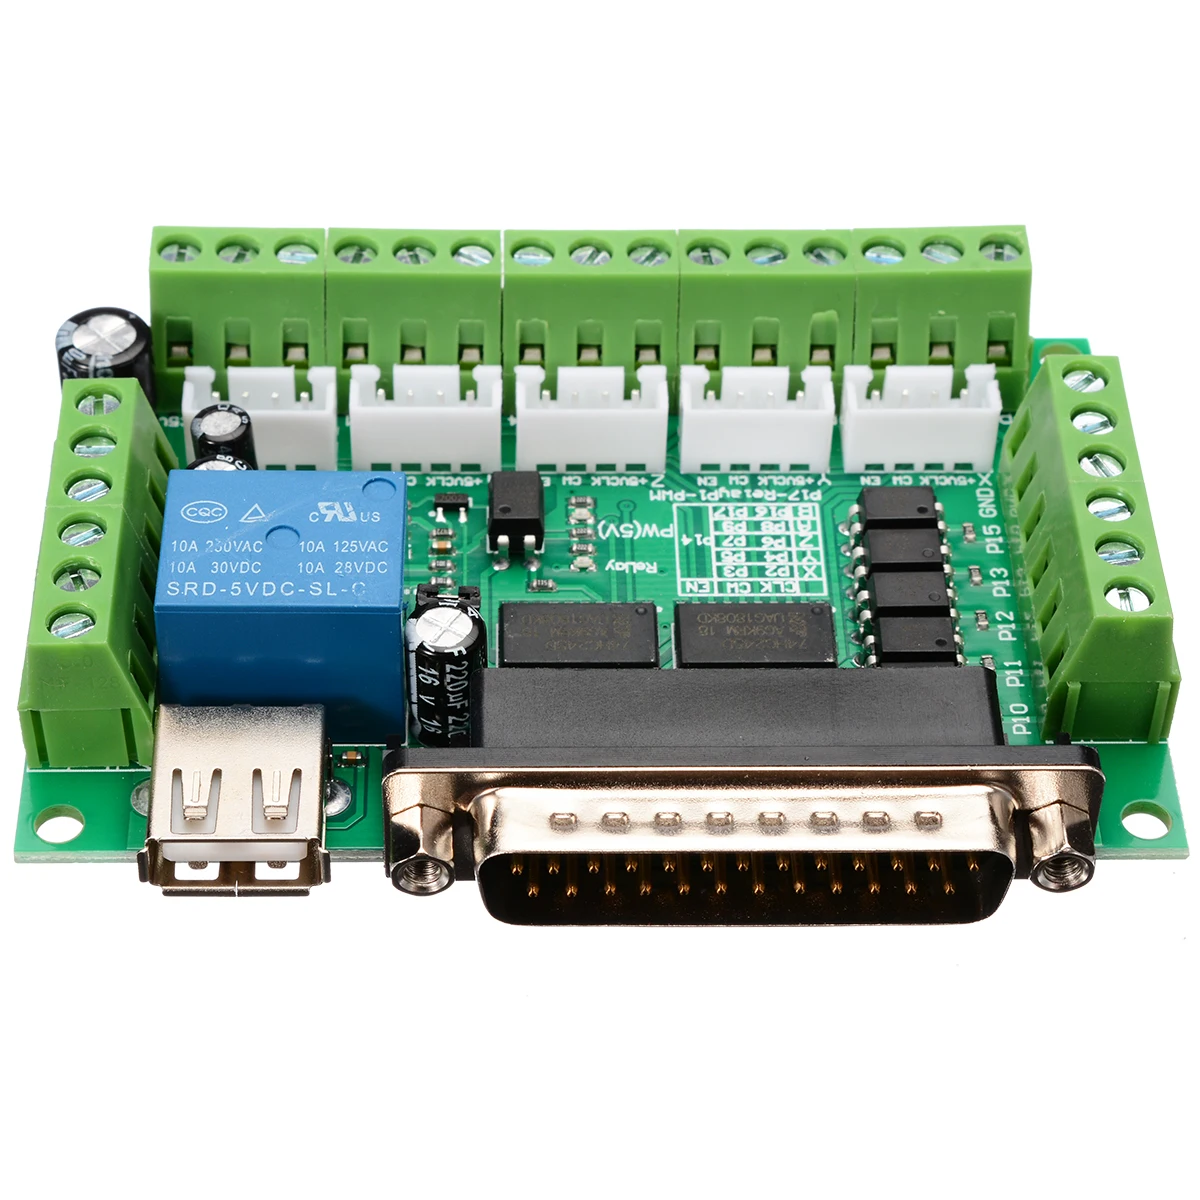 1 шт. 5 осевой ЧПУ Breakout Board для шагового контроллера управления драйвером MACH3 CNC маршрутизатор доска параллельный порт управления